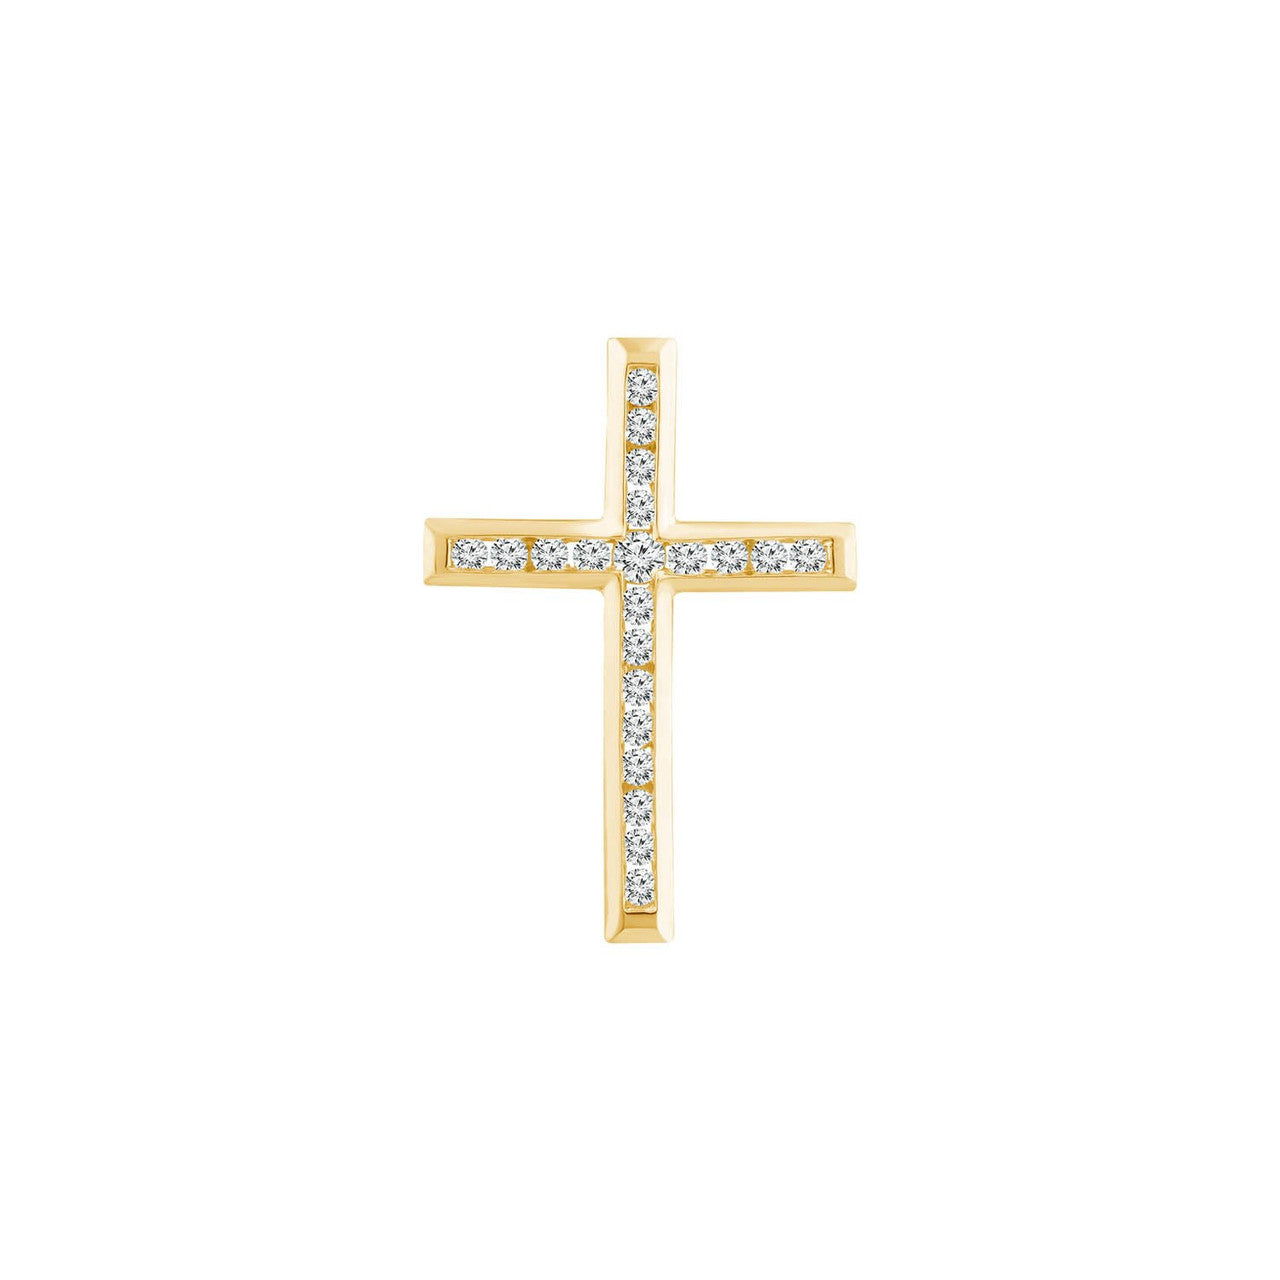 Ice Jewellery Diamond Cross Pendant with 0.50ct Diamonds in 9K Yellow Gold - PC-0172-Y | Ice Jewellery Australia